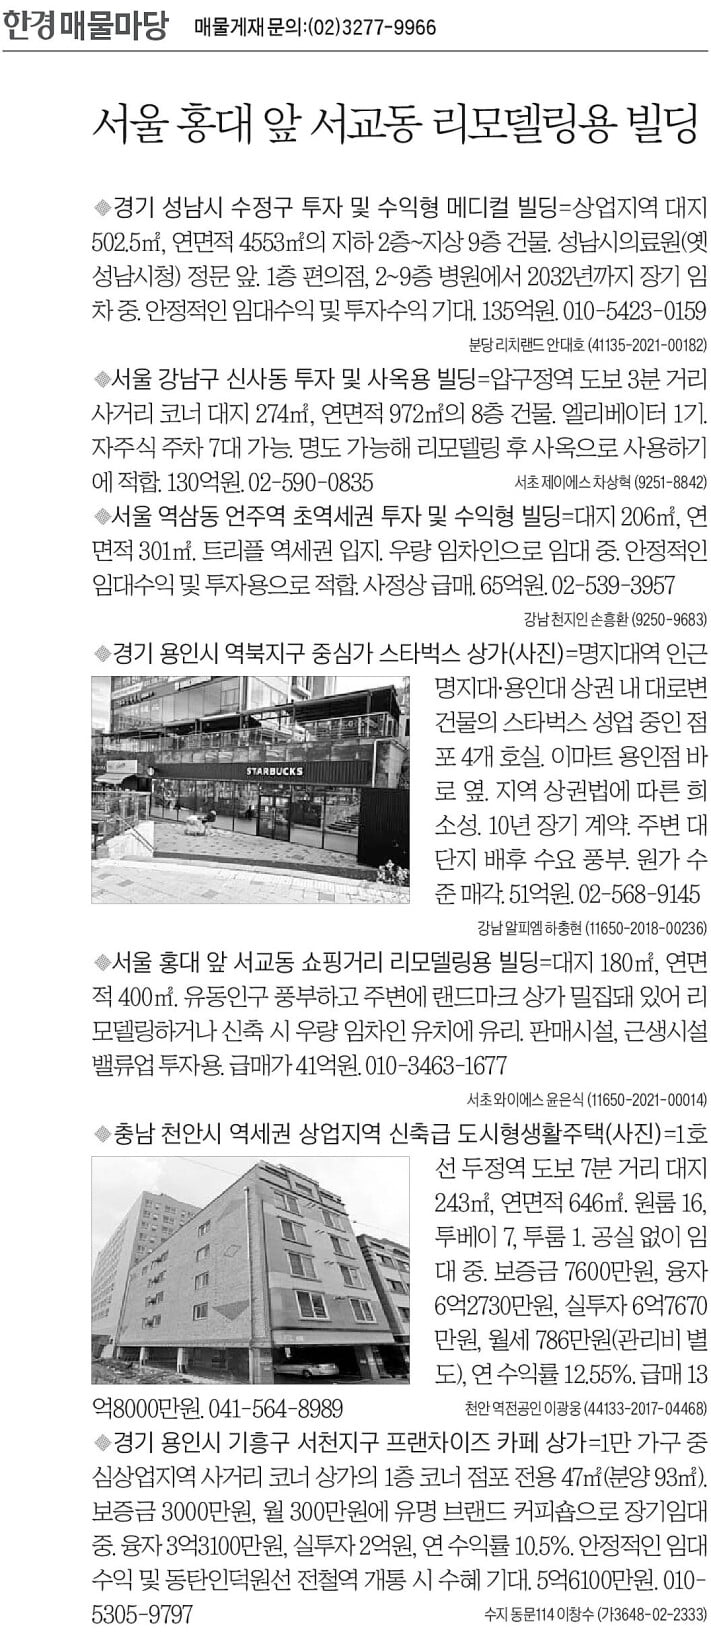 [한경 매물마당] 홍대 앞 서교동 리모델링용 빌딩 등 7건